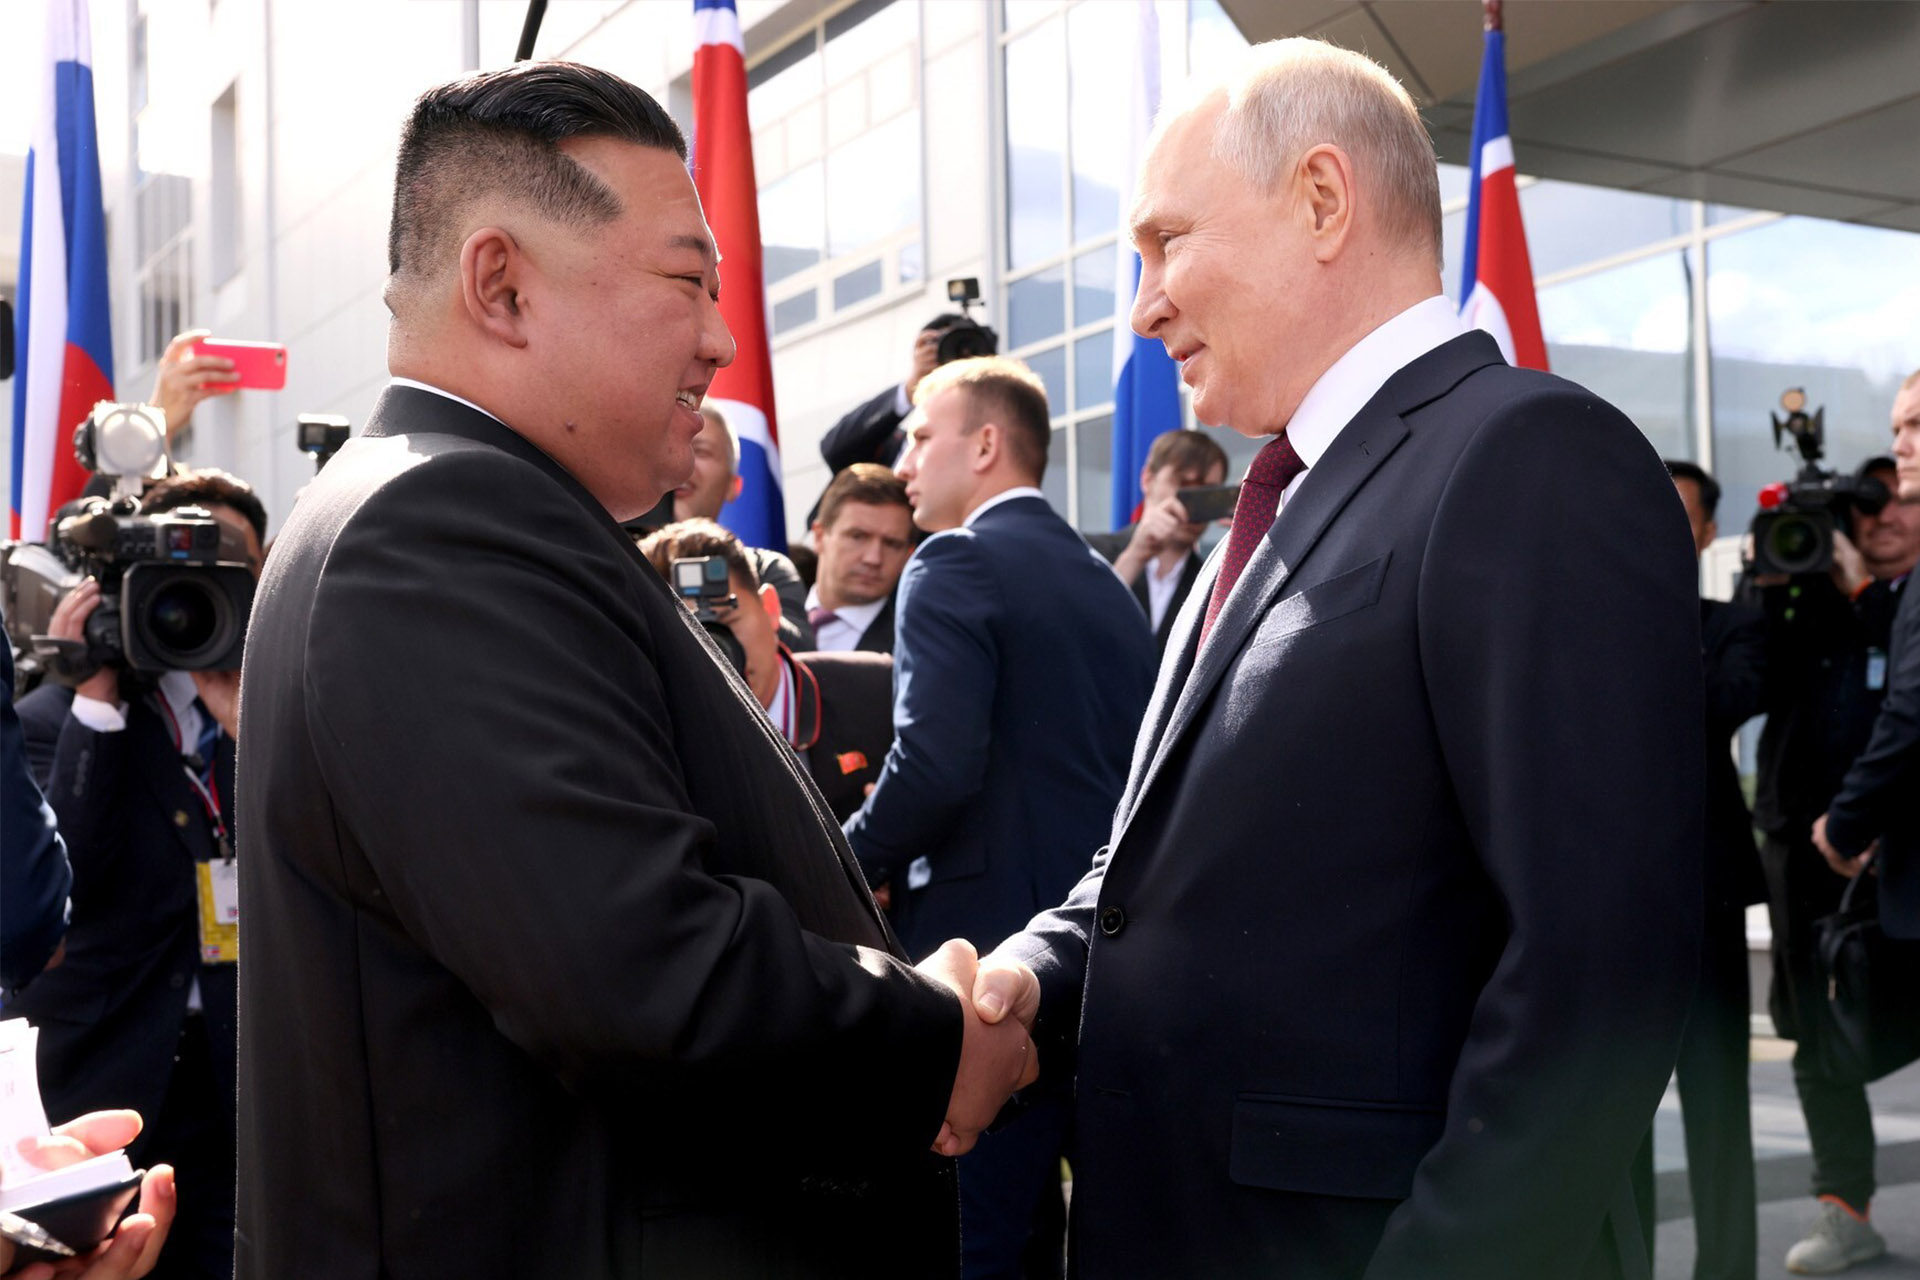 Путін і Кім Чен Ин